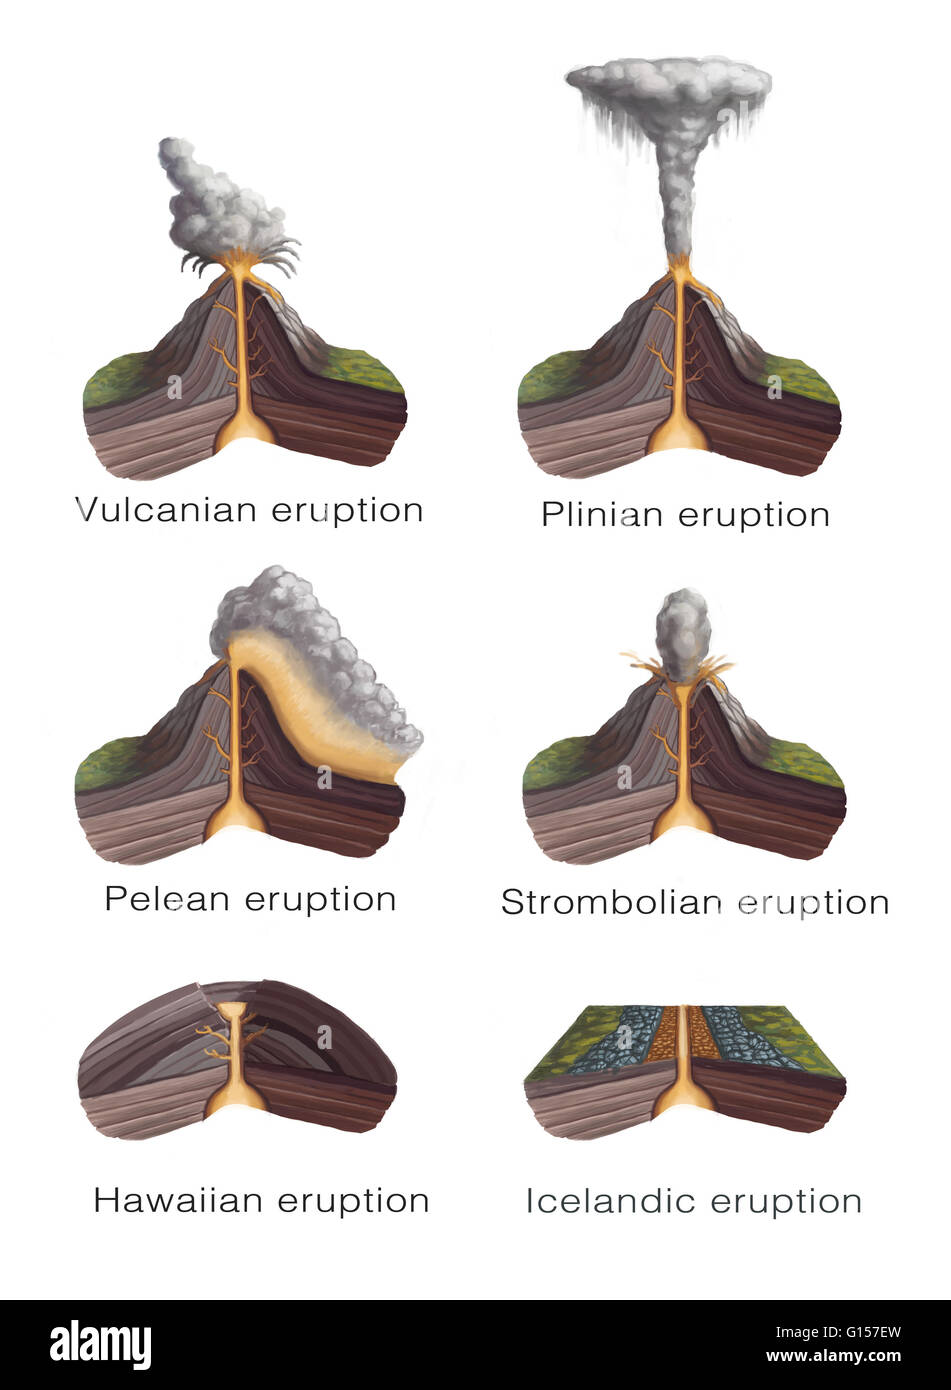 Types of volcanic eruptions Vulcanian eruption  a short 